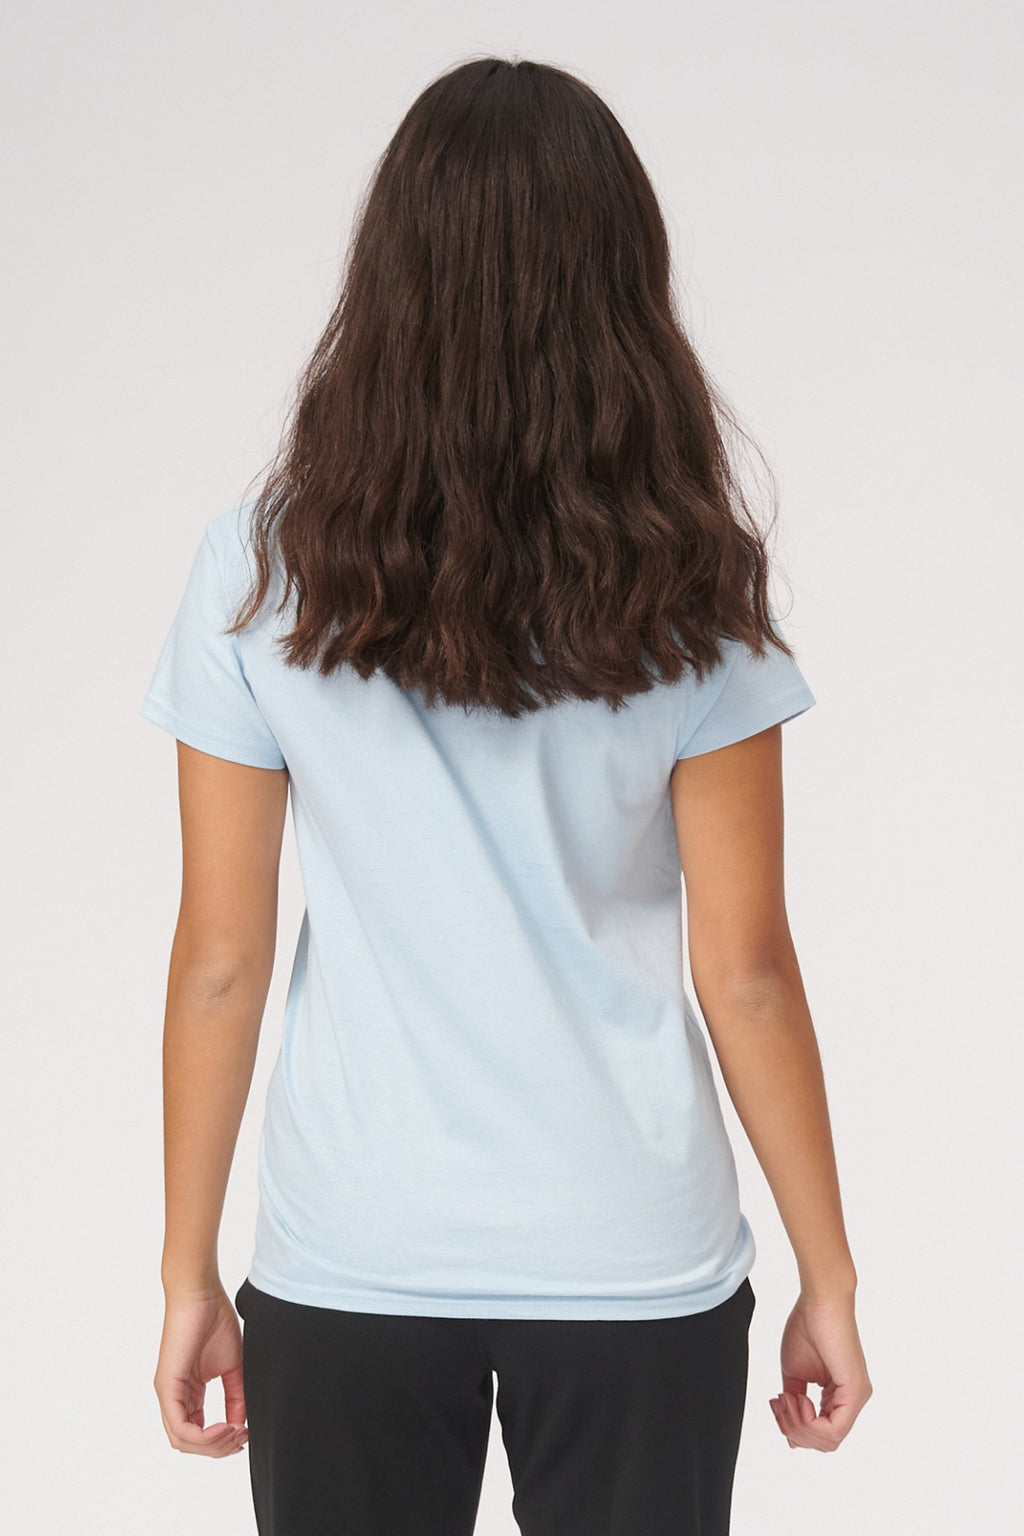 Basic T -Shirt - Himmelblau